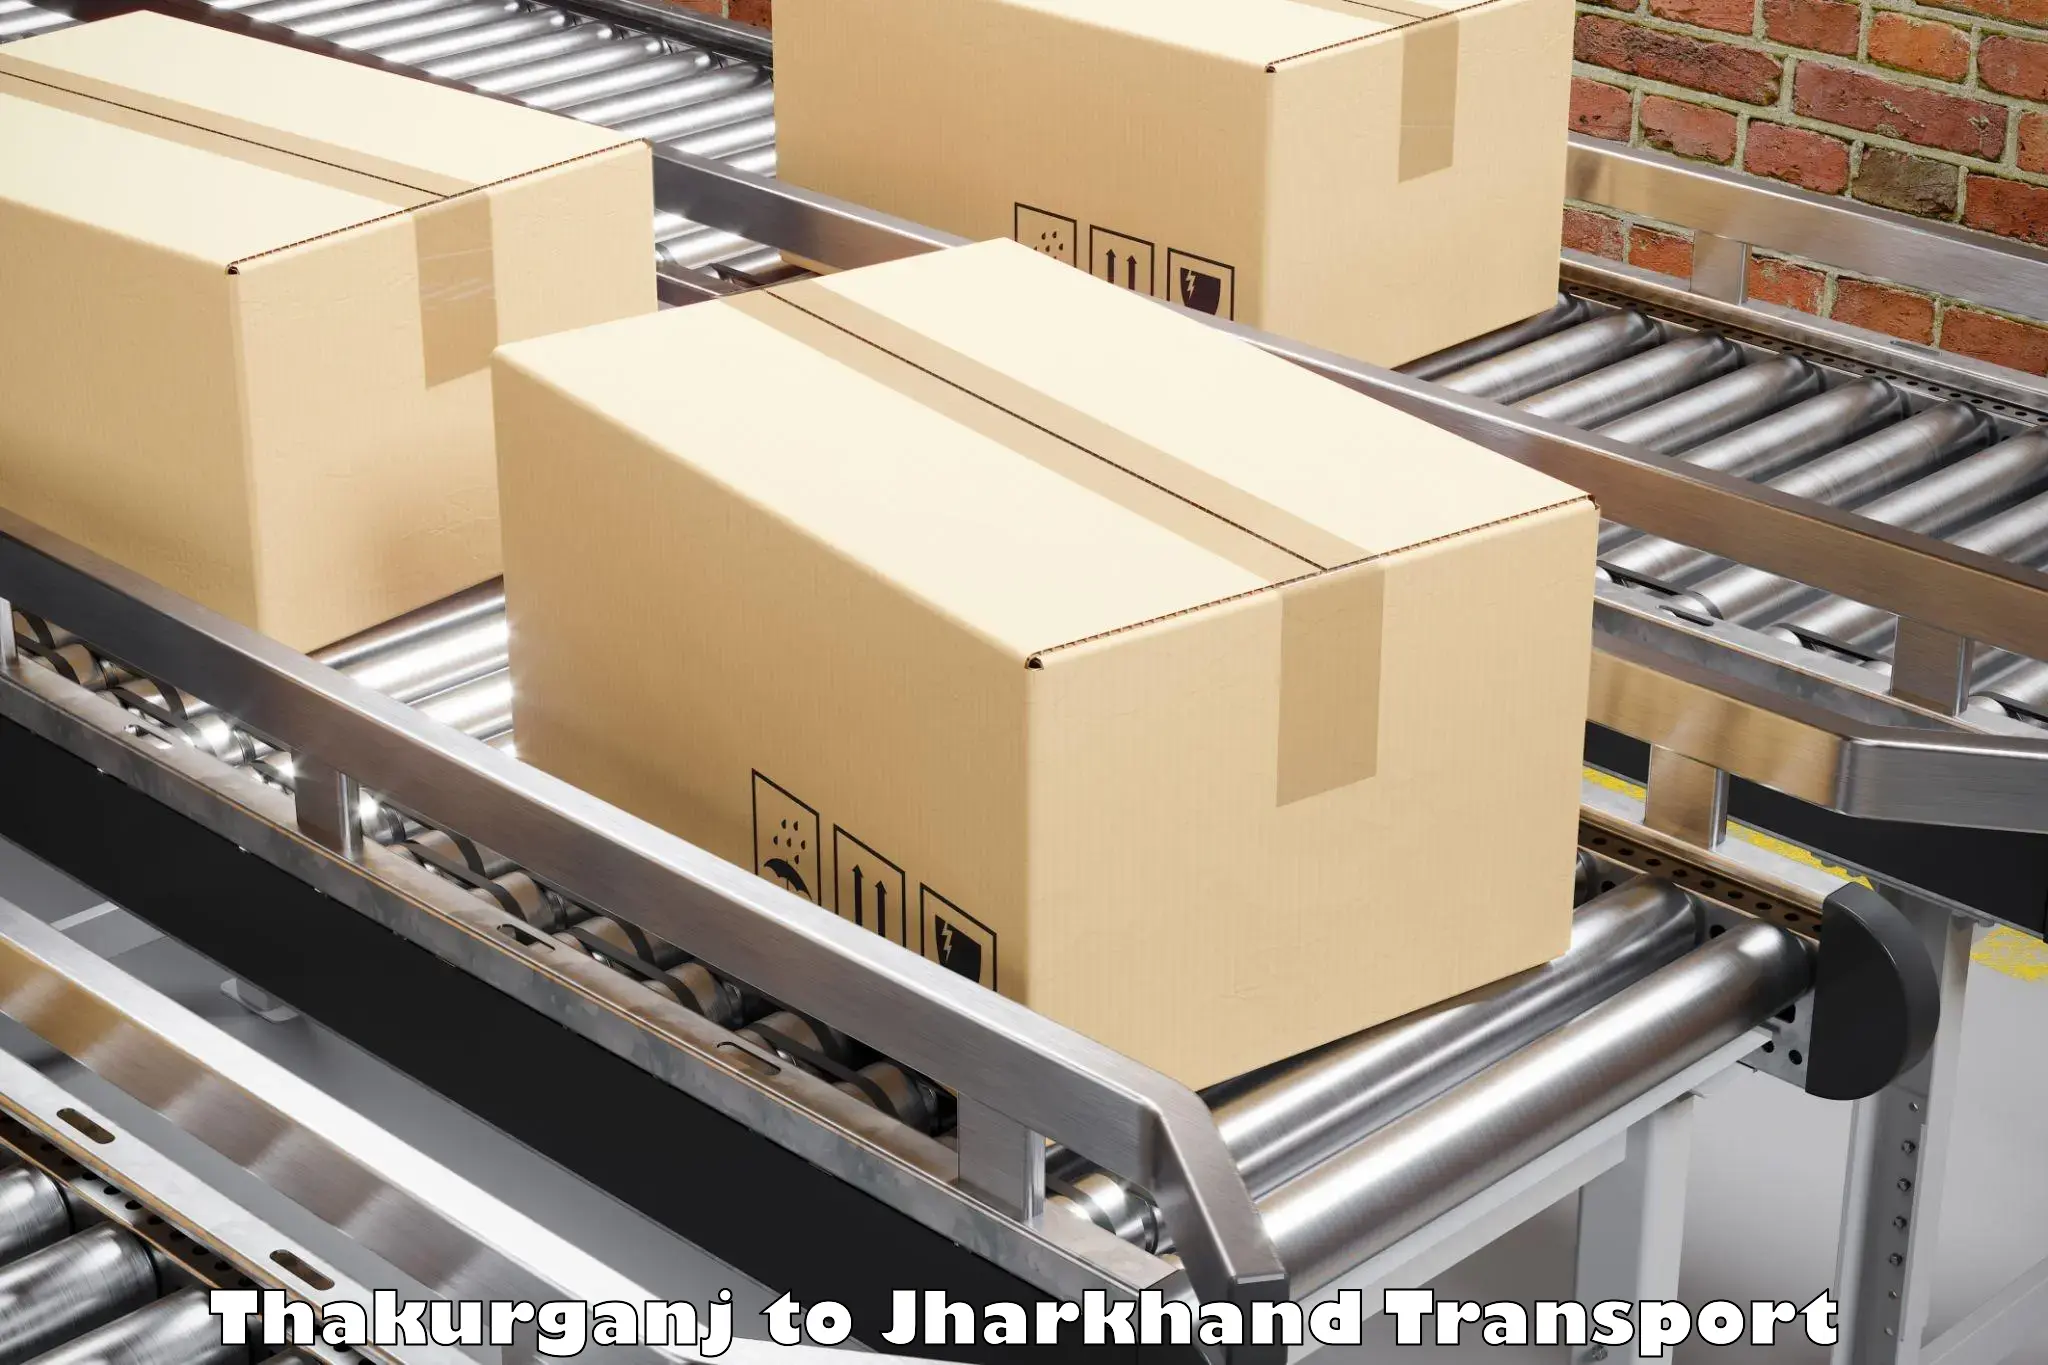 Online transport service Thakurganj to Dhanbad